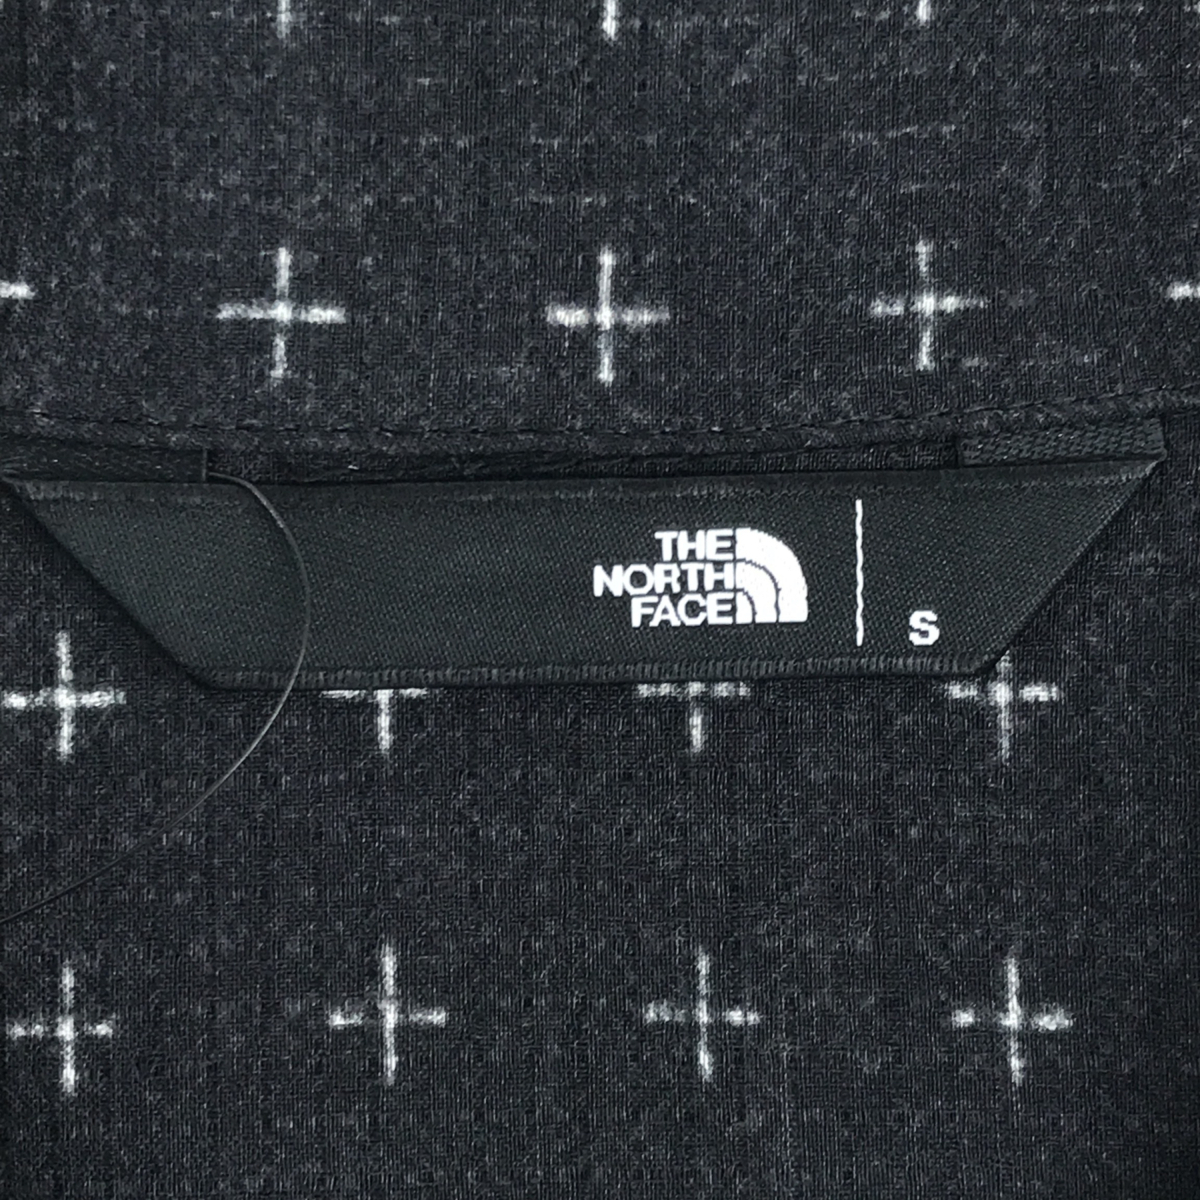 THE NORTH FACE ザノースフェイス NR22330 S/S Aloha Vent Shirt ショートスリーブアロハベントシャツ 半袖シャツ S ブラック ペイズリー_画像4